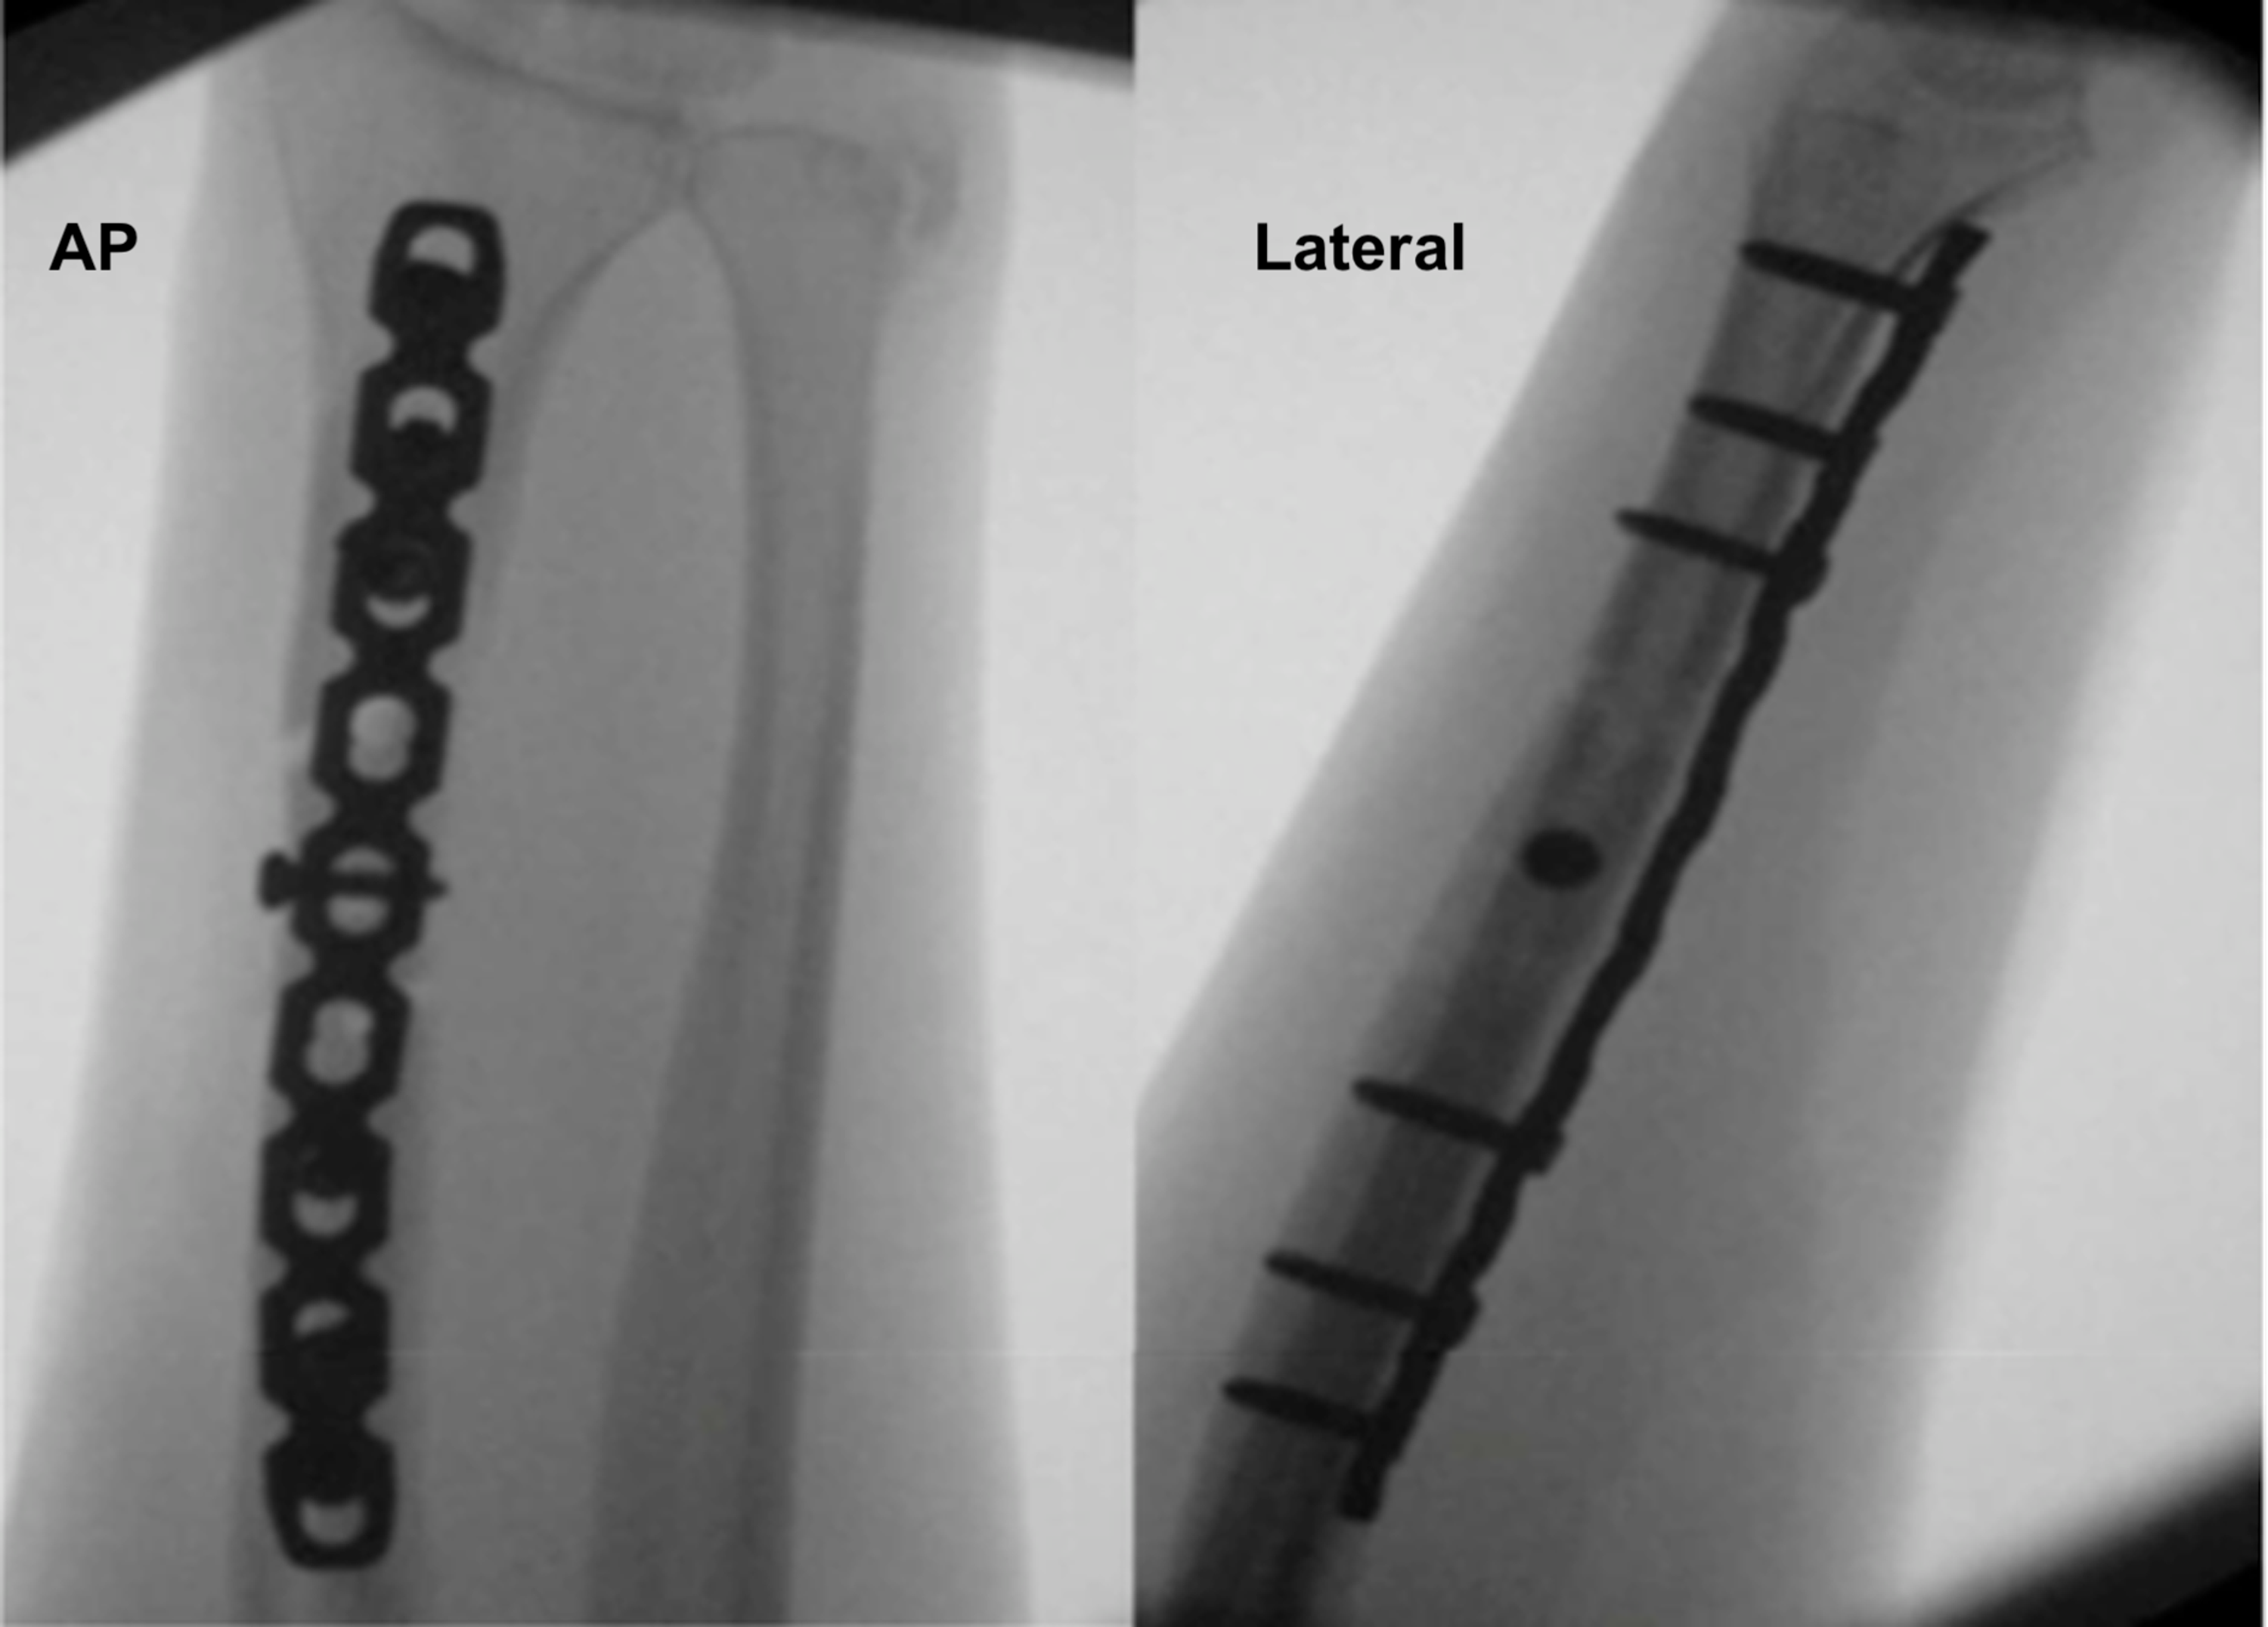 galeazzi fracture bone stimulator